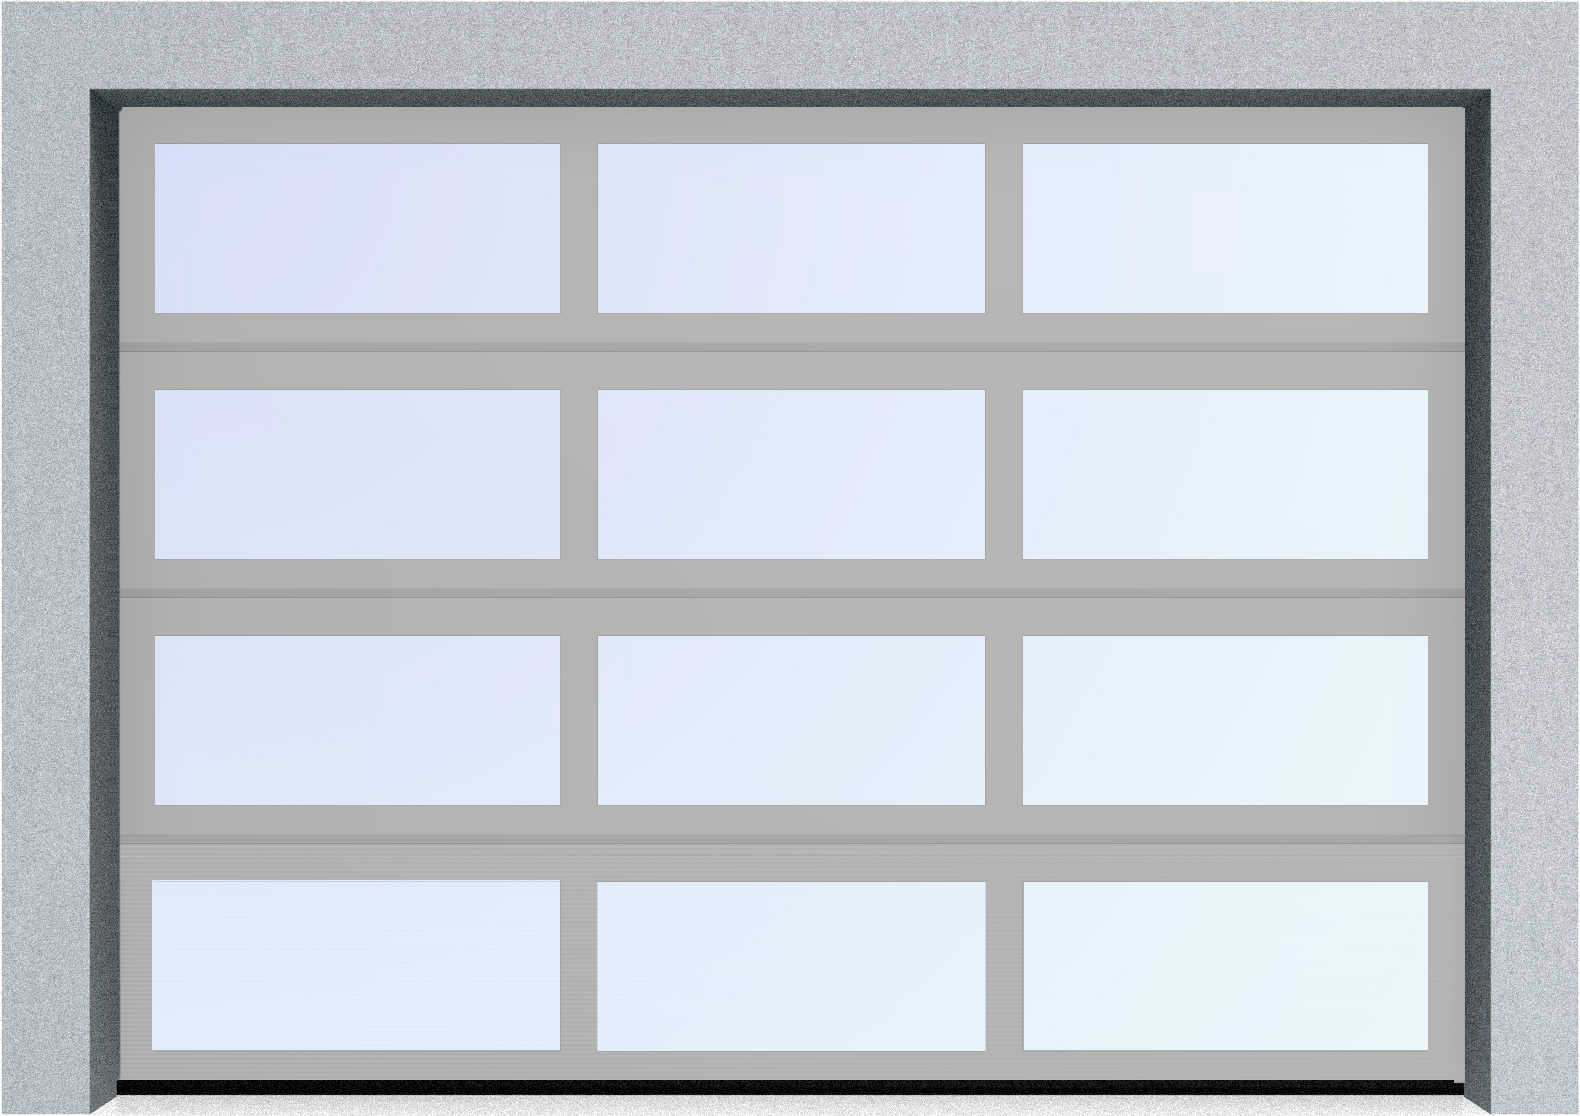  Секционные панорамные ворота серии AluTrend (АЛП) 2625х1875 нижняя панель стандартные цвета, фото 9 